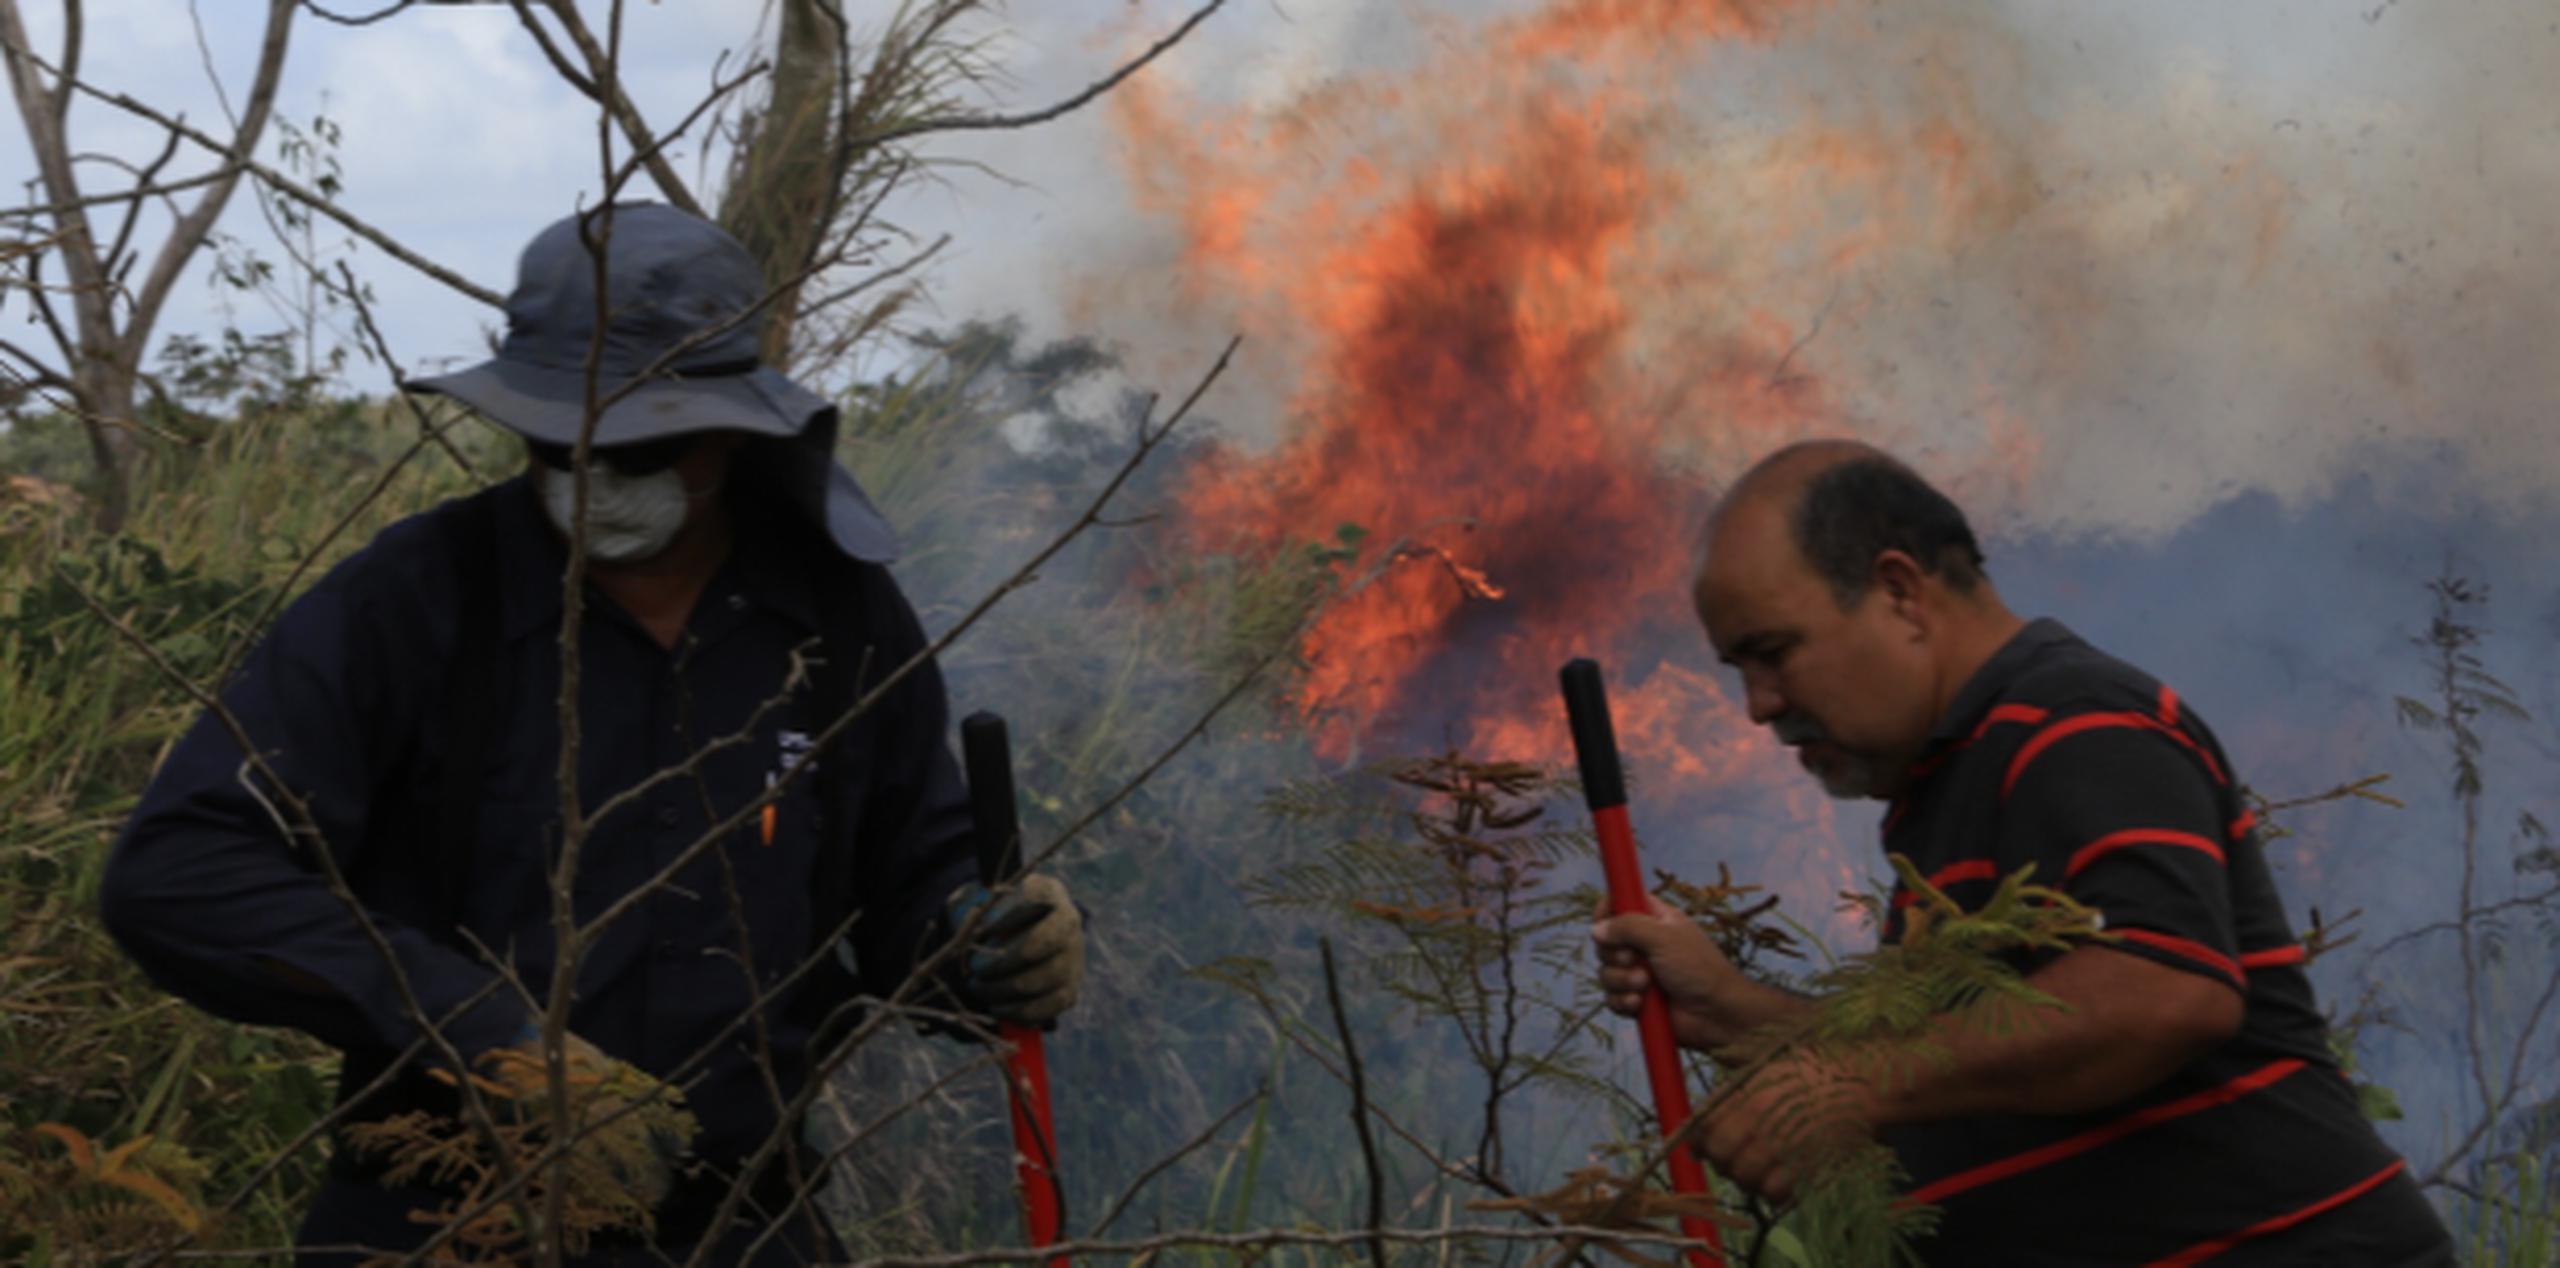 Aún quedan segmentos en llamas y humo entre las 200 cuerdas de terreno afectadas por el incendio que comenzó ayer en Gurabo. (angel.rivera@gfrmedia.com)